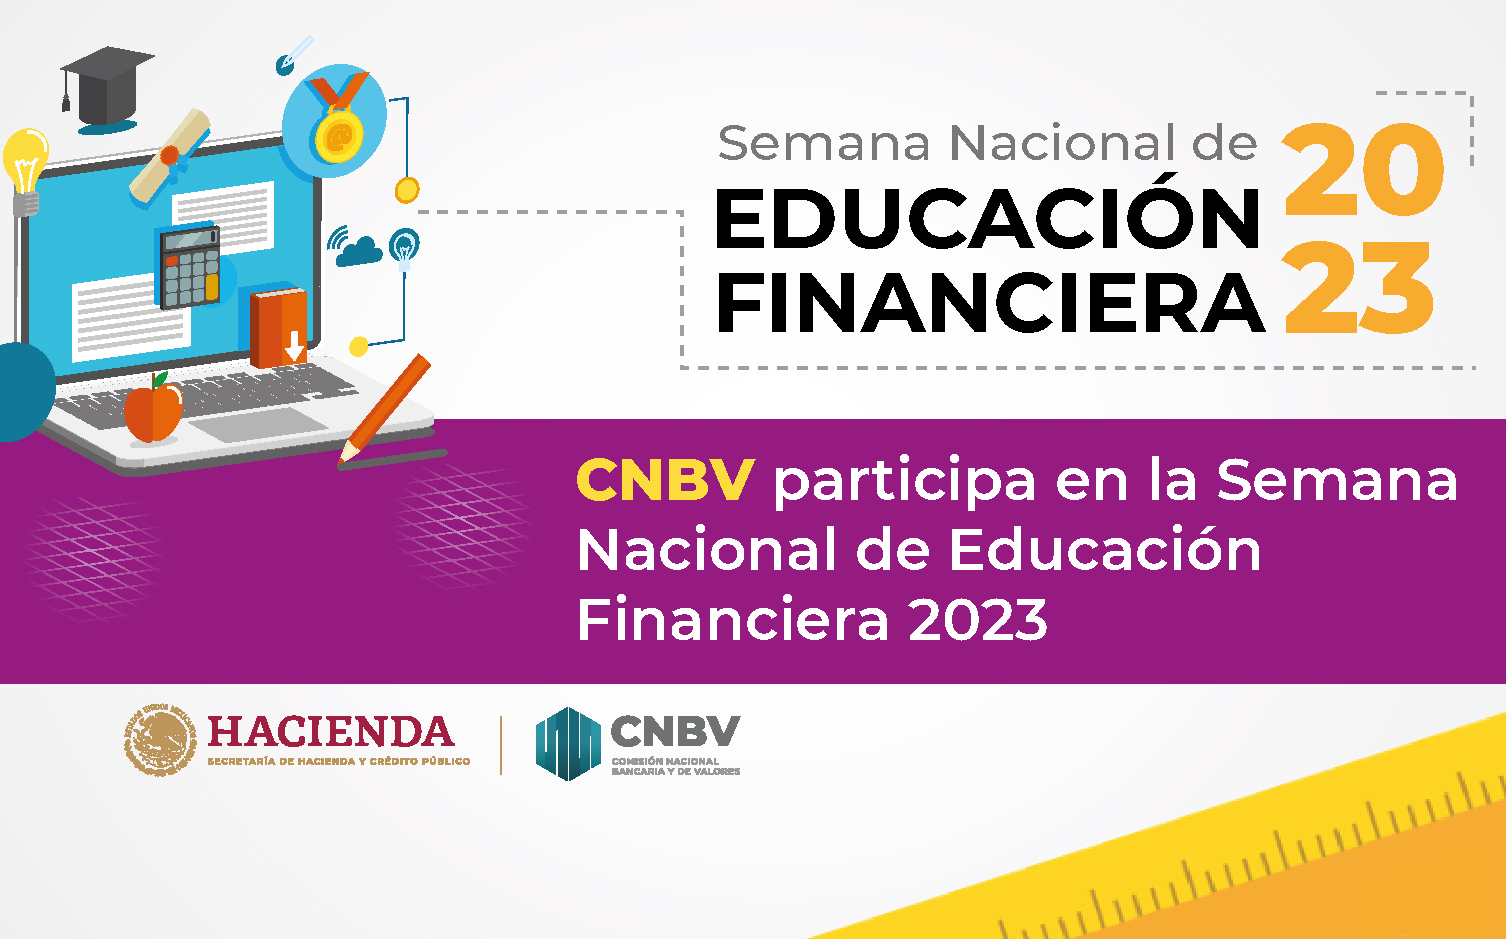 La CNBV te invita a participar en las actividades de la Semana Nacional de Educación Financiera 2023